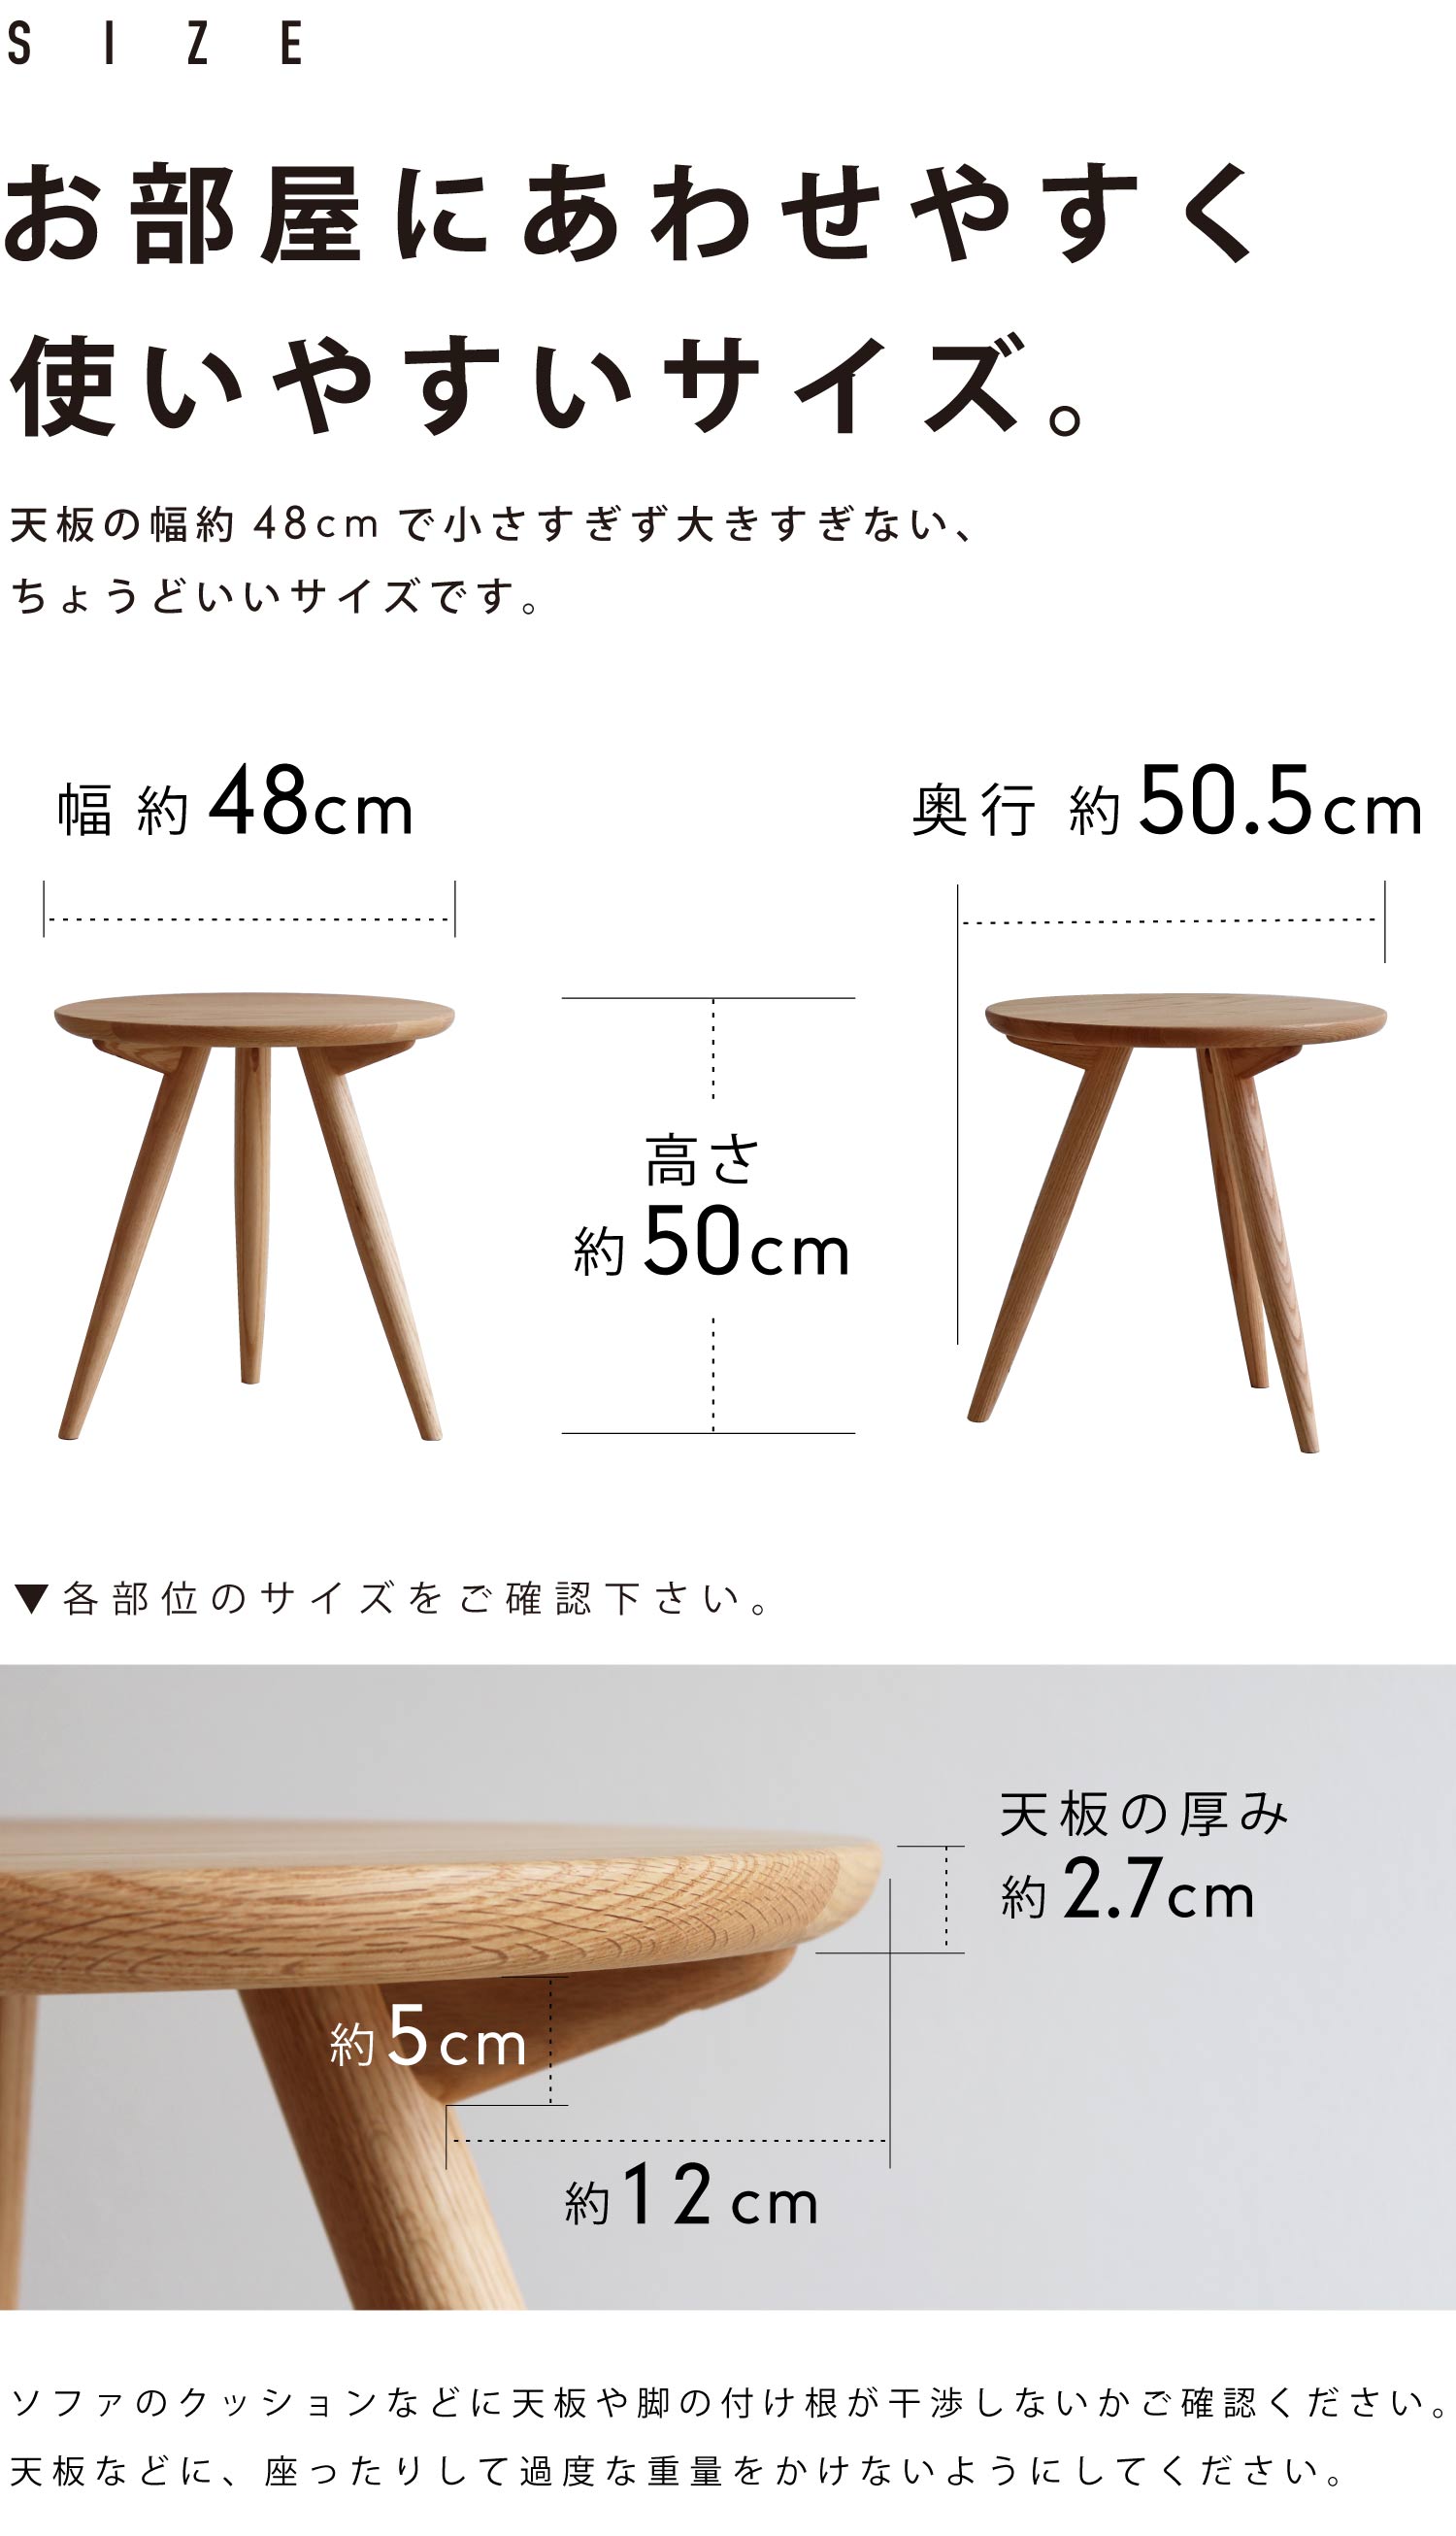 お部屋にあわせやすく使いやすいサイズのサイドテーブル。